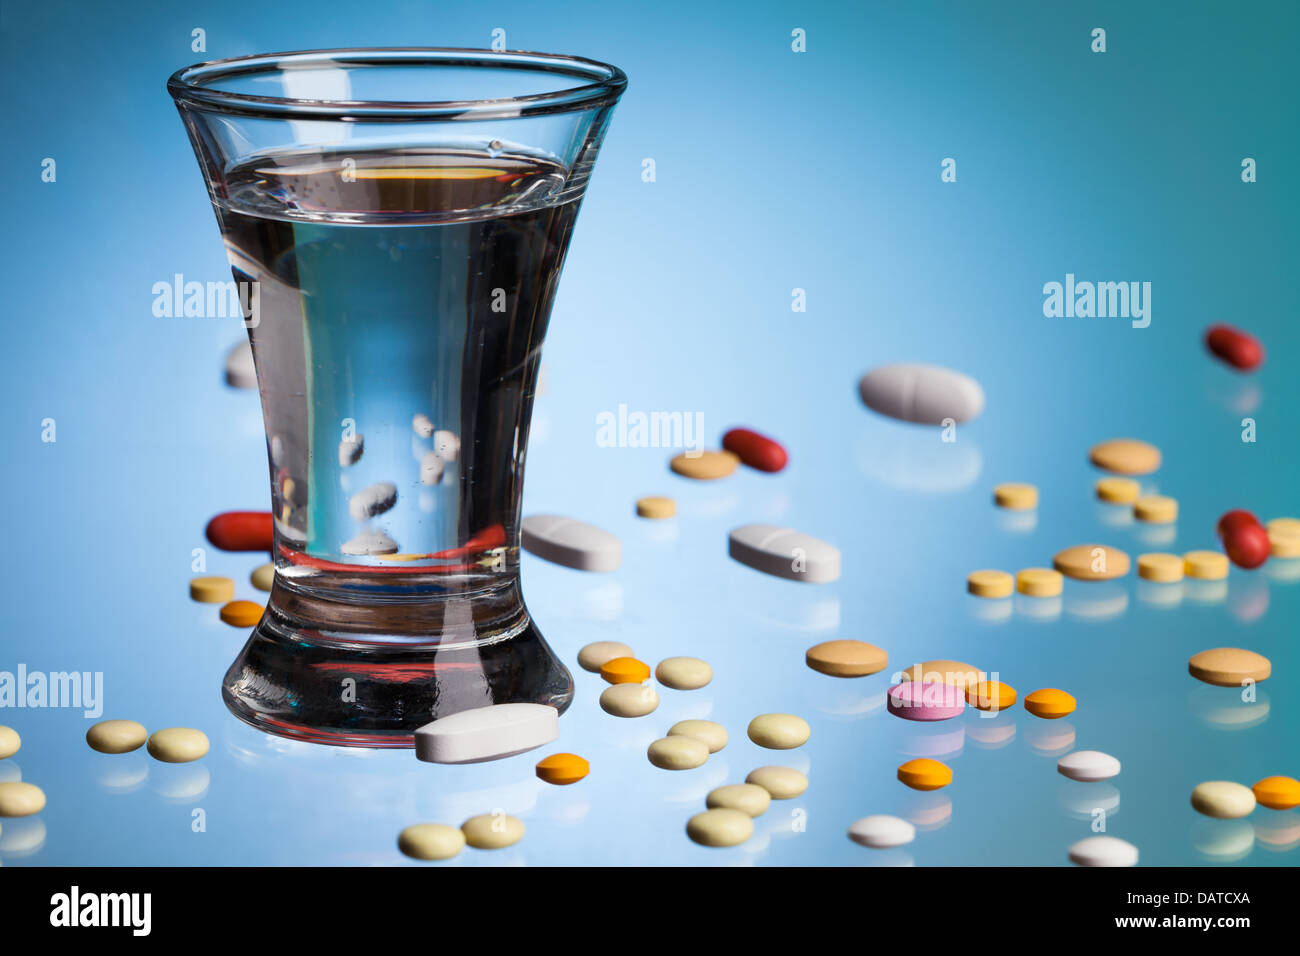 Glas Wasser zum trinken, Drogen, Tabletten und Pillen auf blauer Tisch  Stockfotografie - Alamy